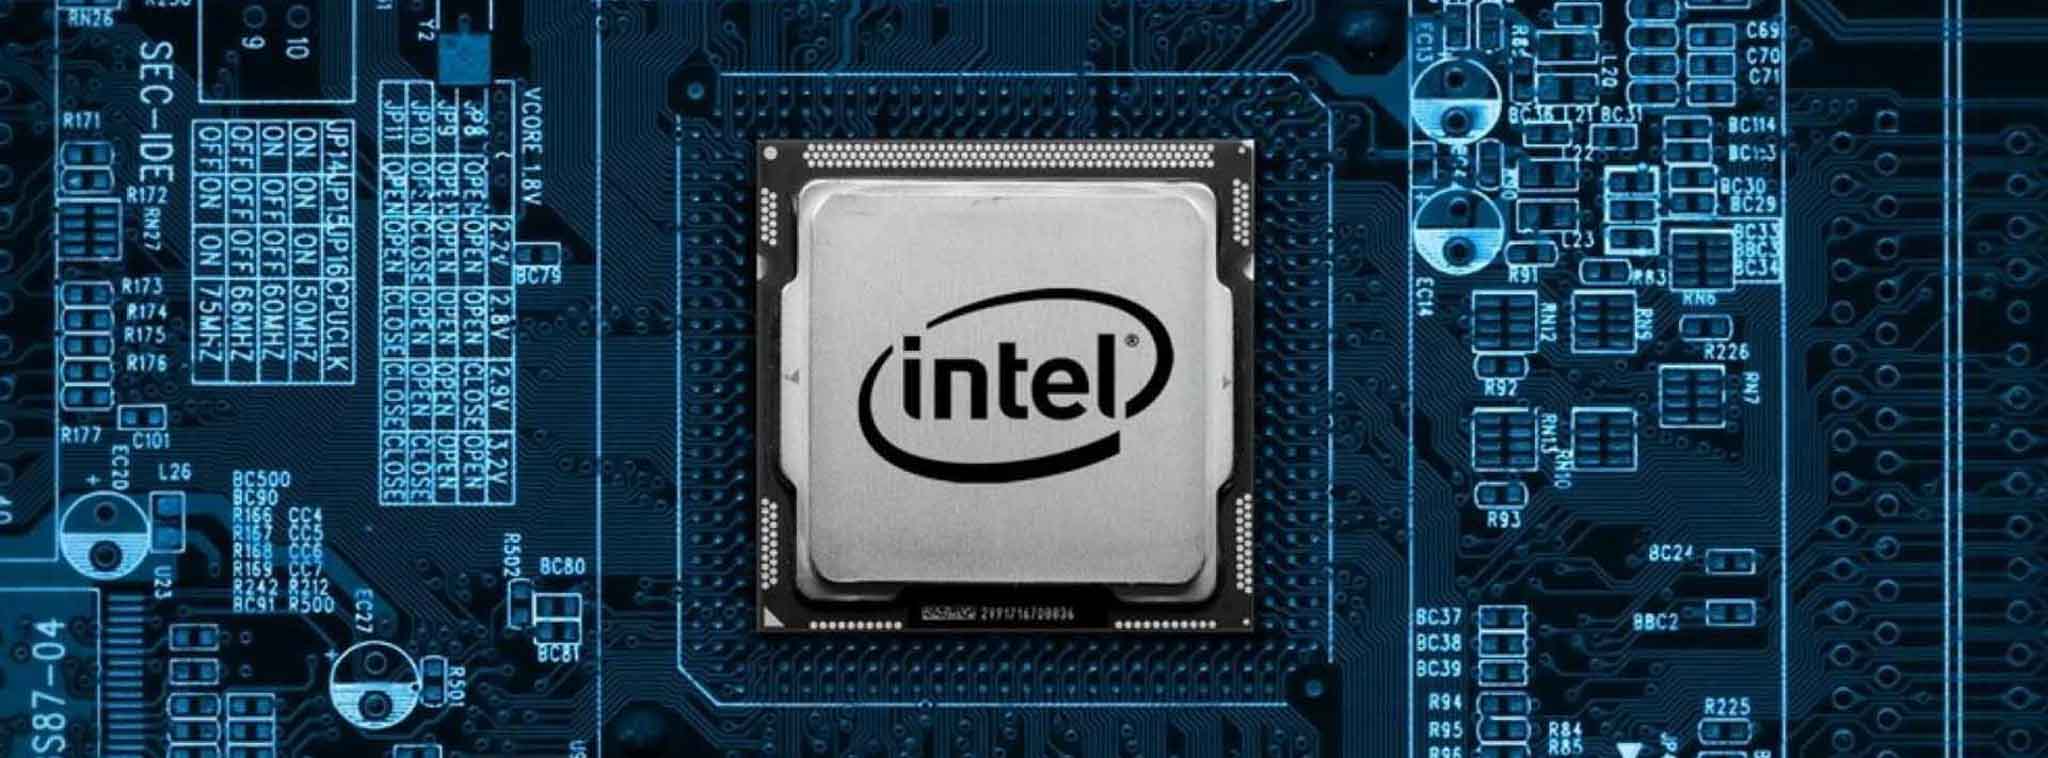 CPU Intel Ice Lake ra mắt vào 2018 sẽ có đến 8 nhân/16 luồng?